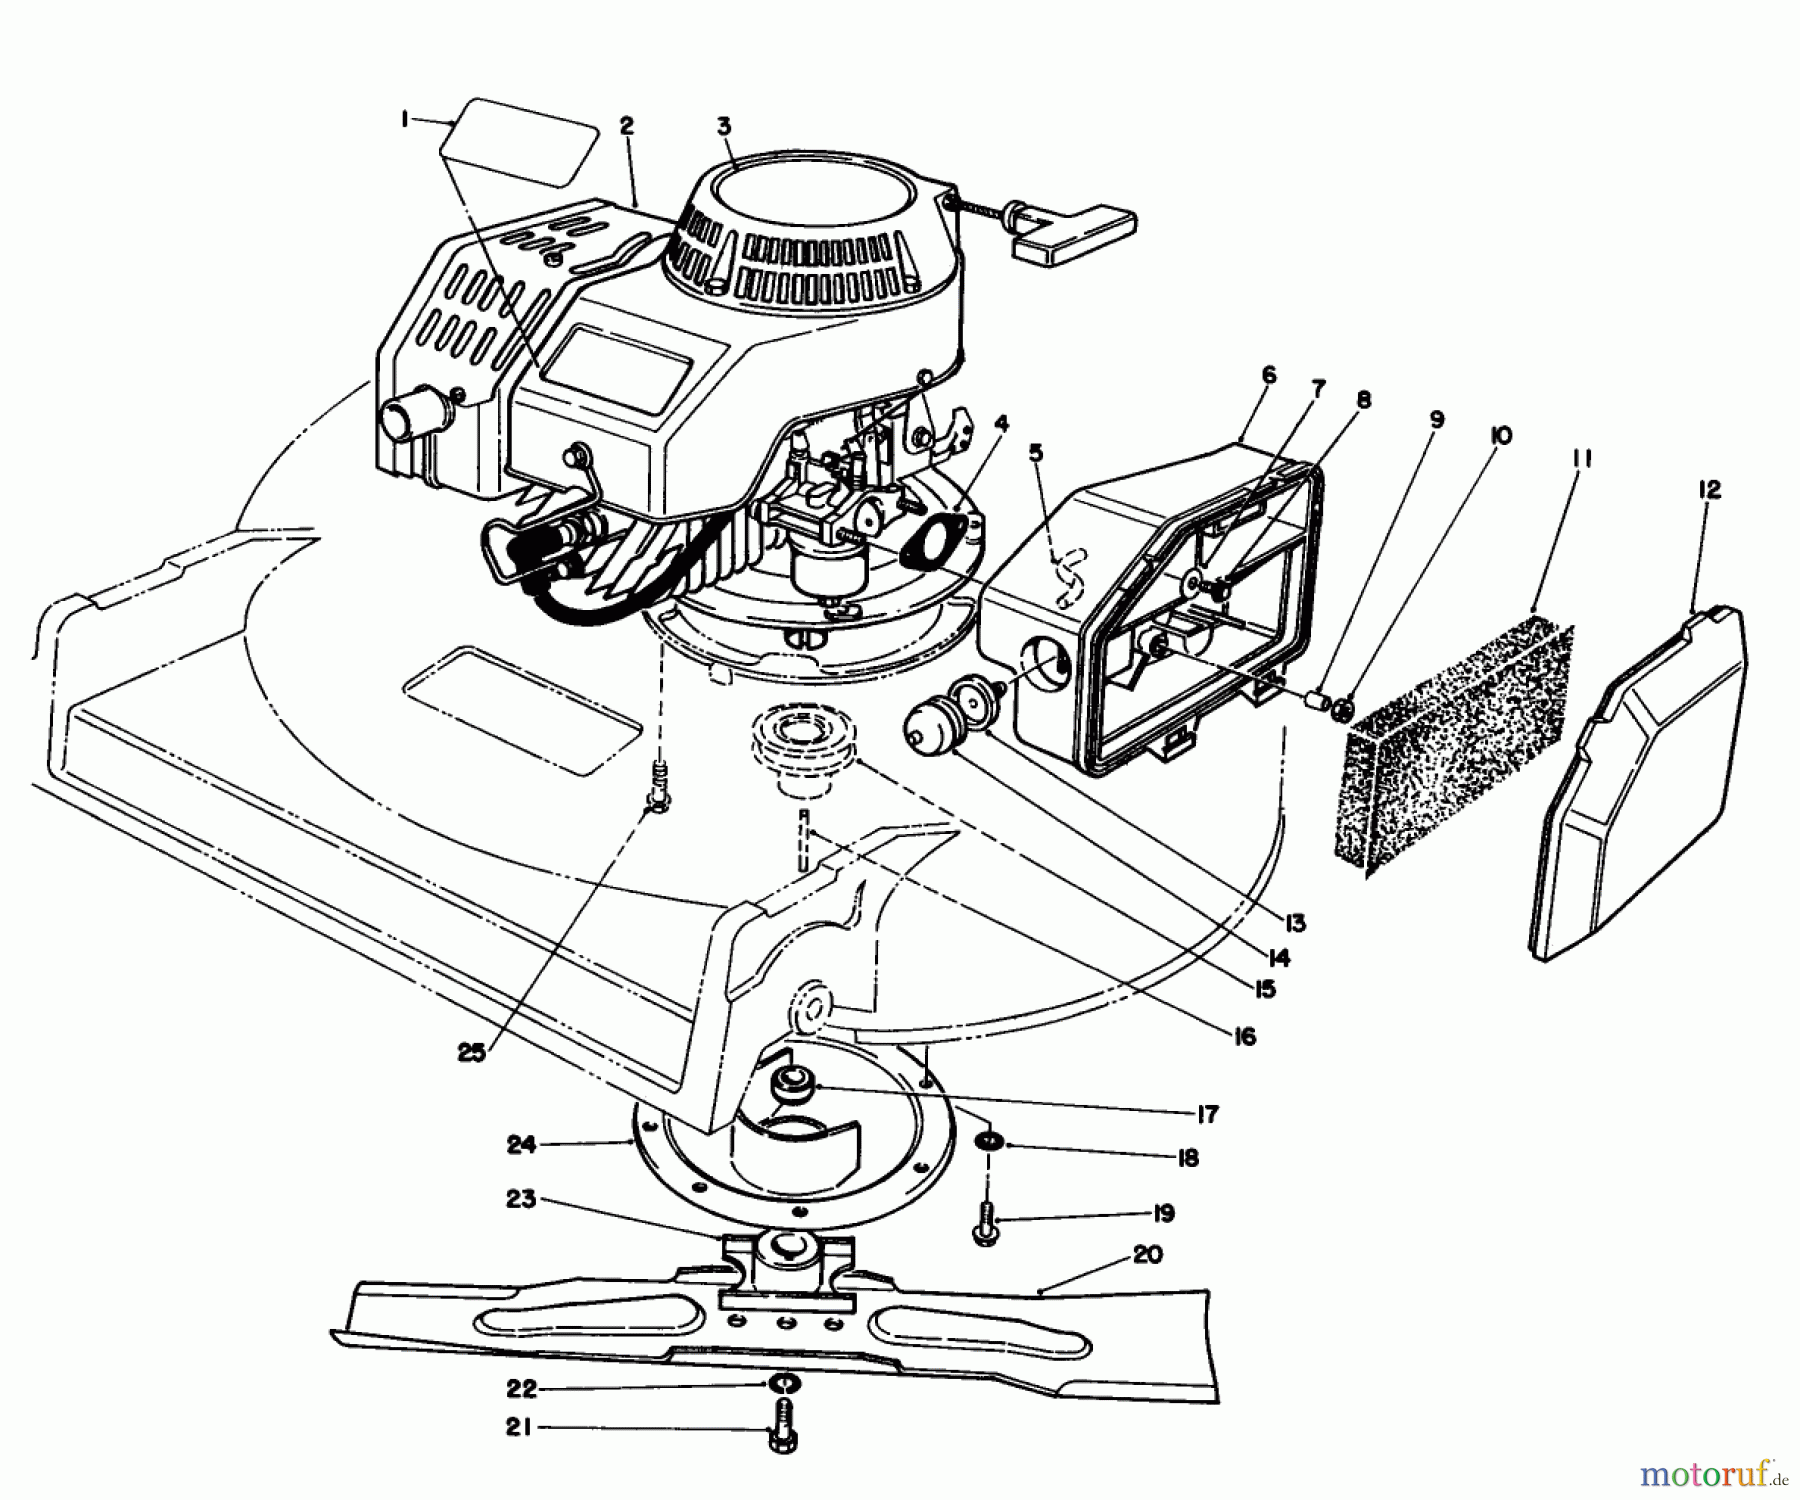  Toro Neu Mowers, Walk-Behind Seite 2 22030 - Toro Lawnmower, 1991 (1000001-1999999) ENGINE ASSEMBLY (MODEL 22035)